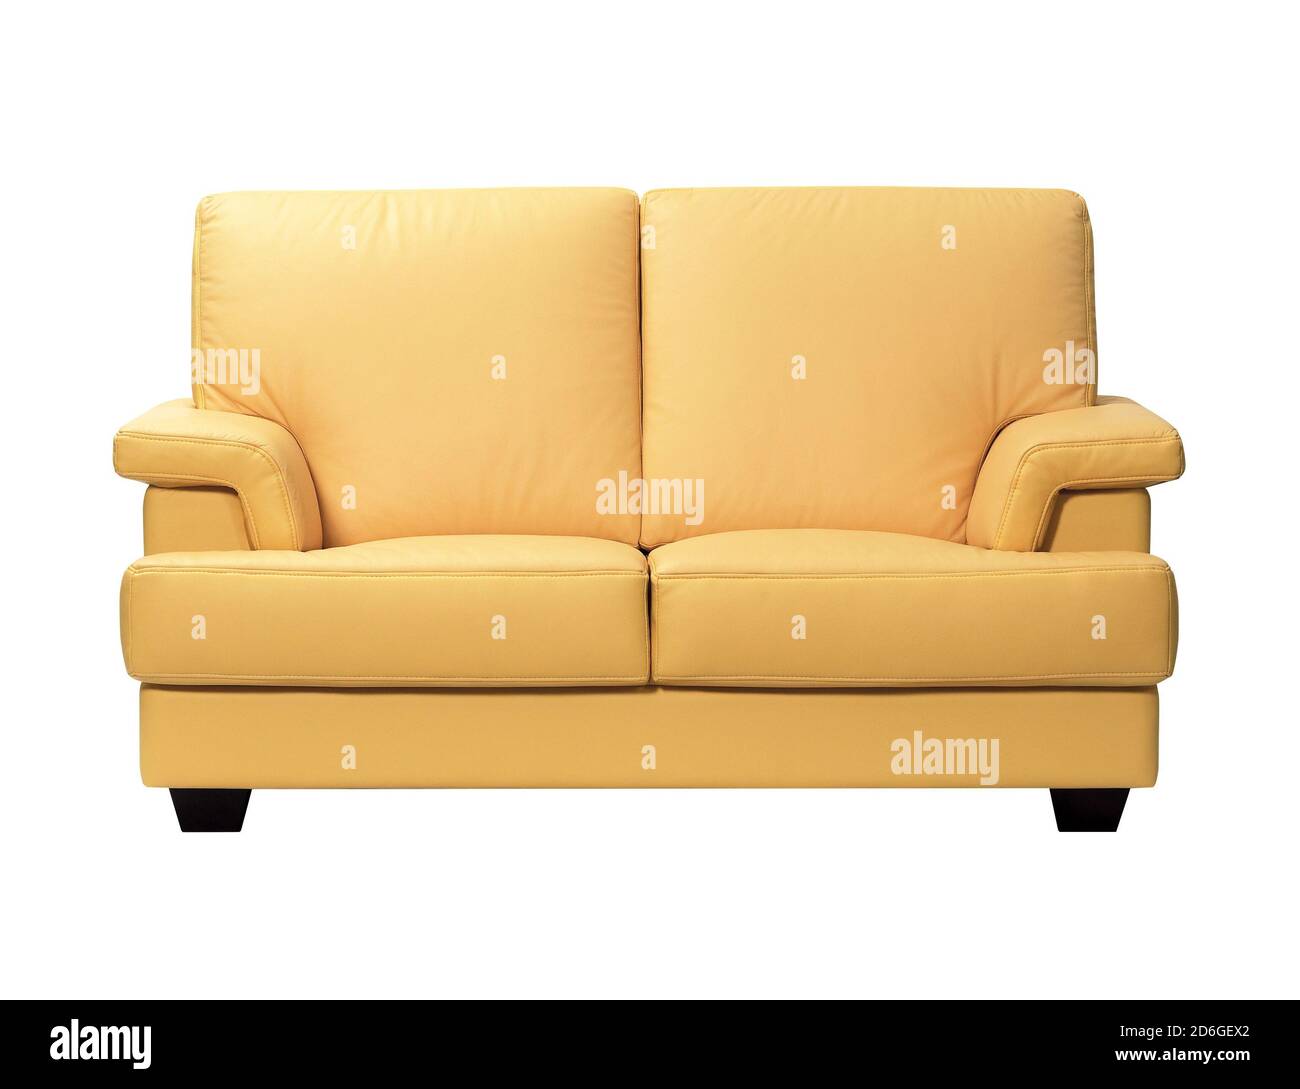 Canapé en cuir beige jaune isolé sur fond blanc Banque D'Images